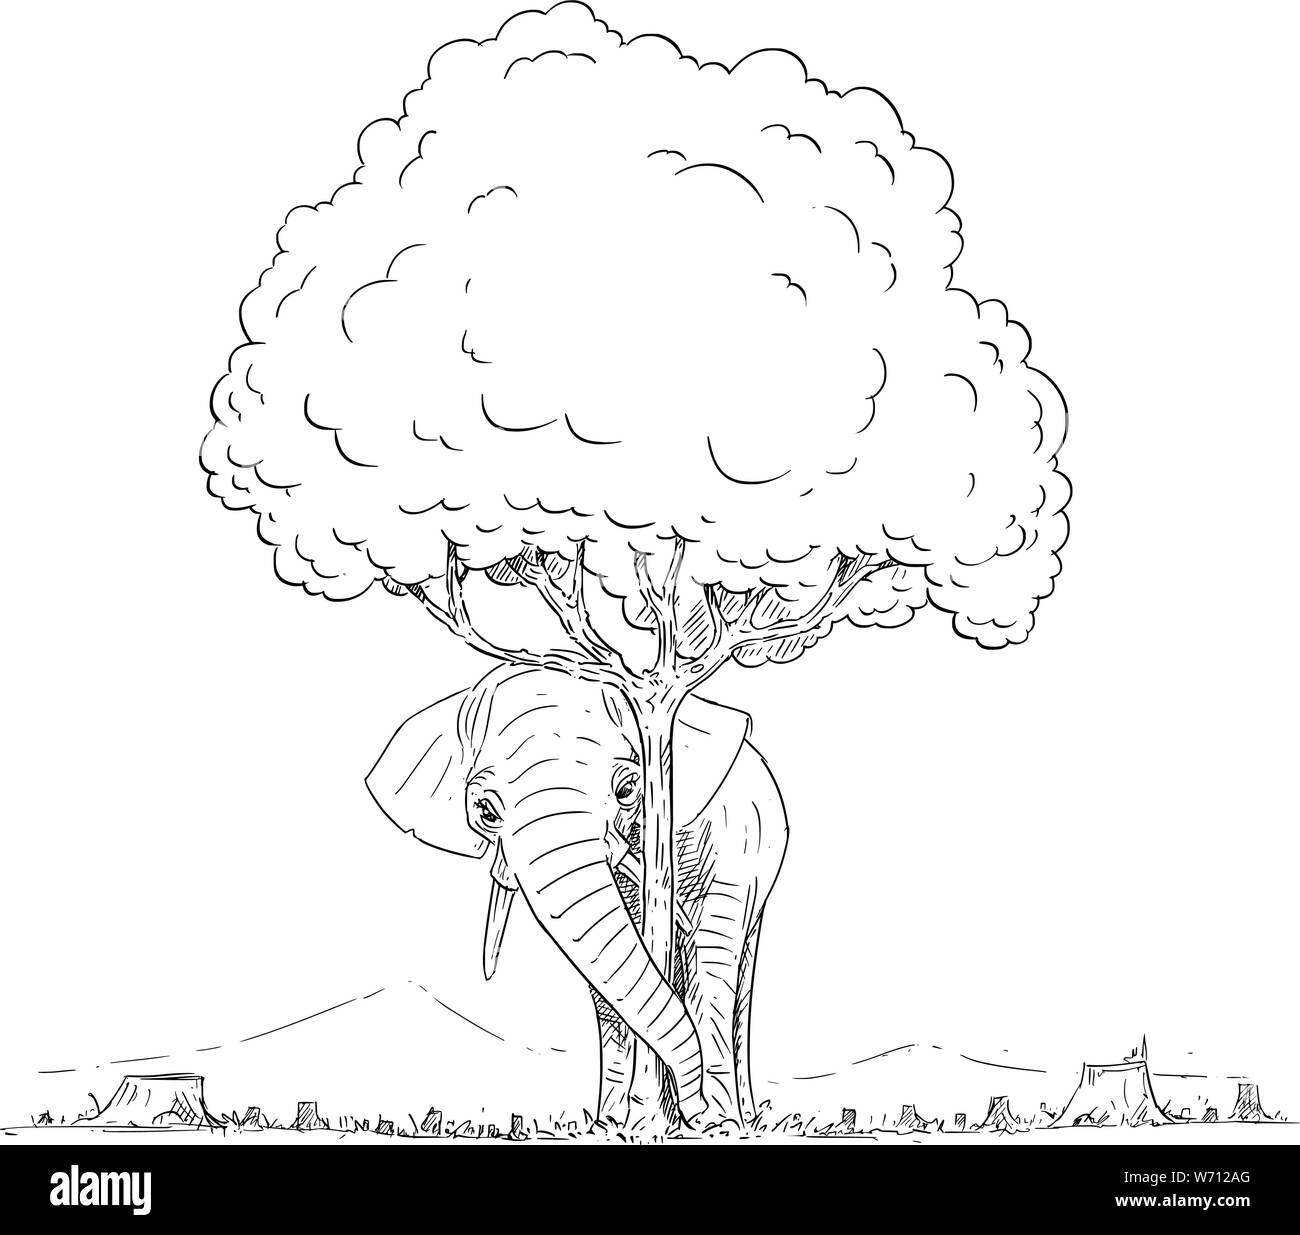 Vektor Komikbild konzeptionelle Darstellung der Elefant versteckt sich hinter letzte Baum, die sich aus dem gehackten Wald links. Die letzten Elefanten Herde ist versteckt in den letzten Wald. Umweltkonzept. Stock Vektor